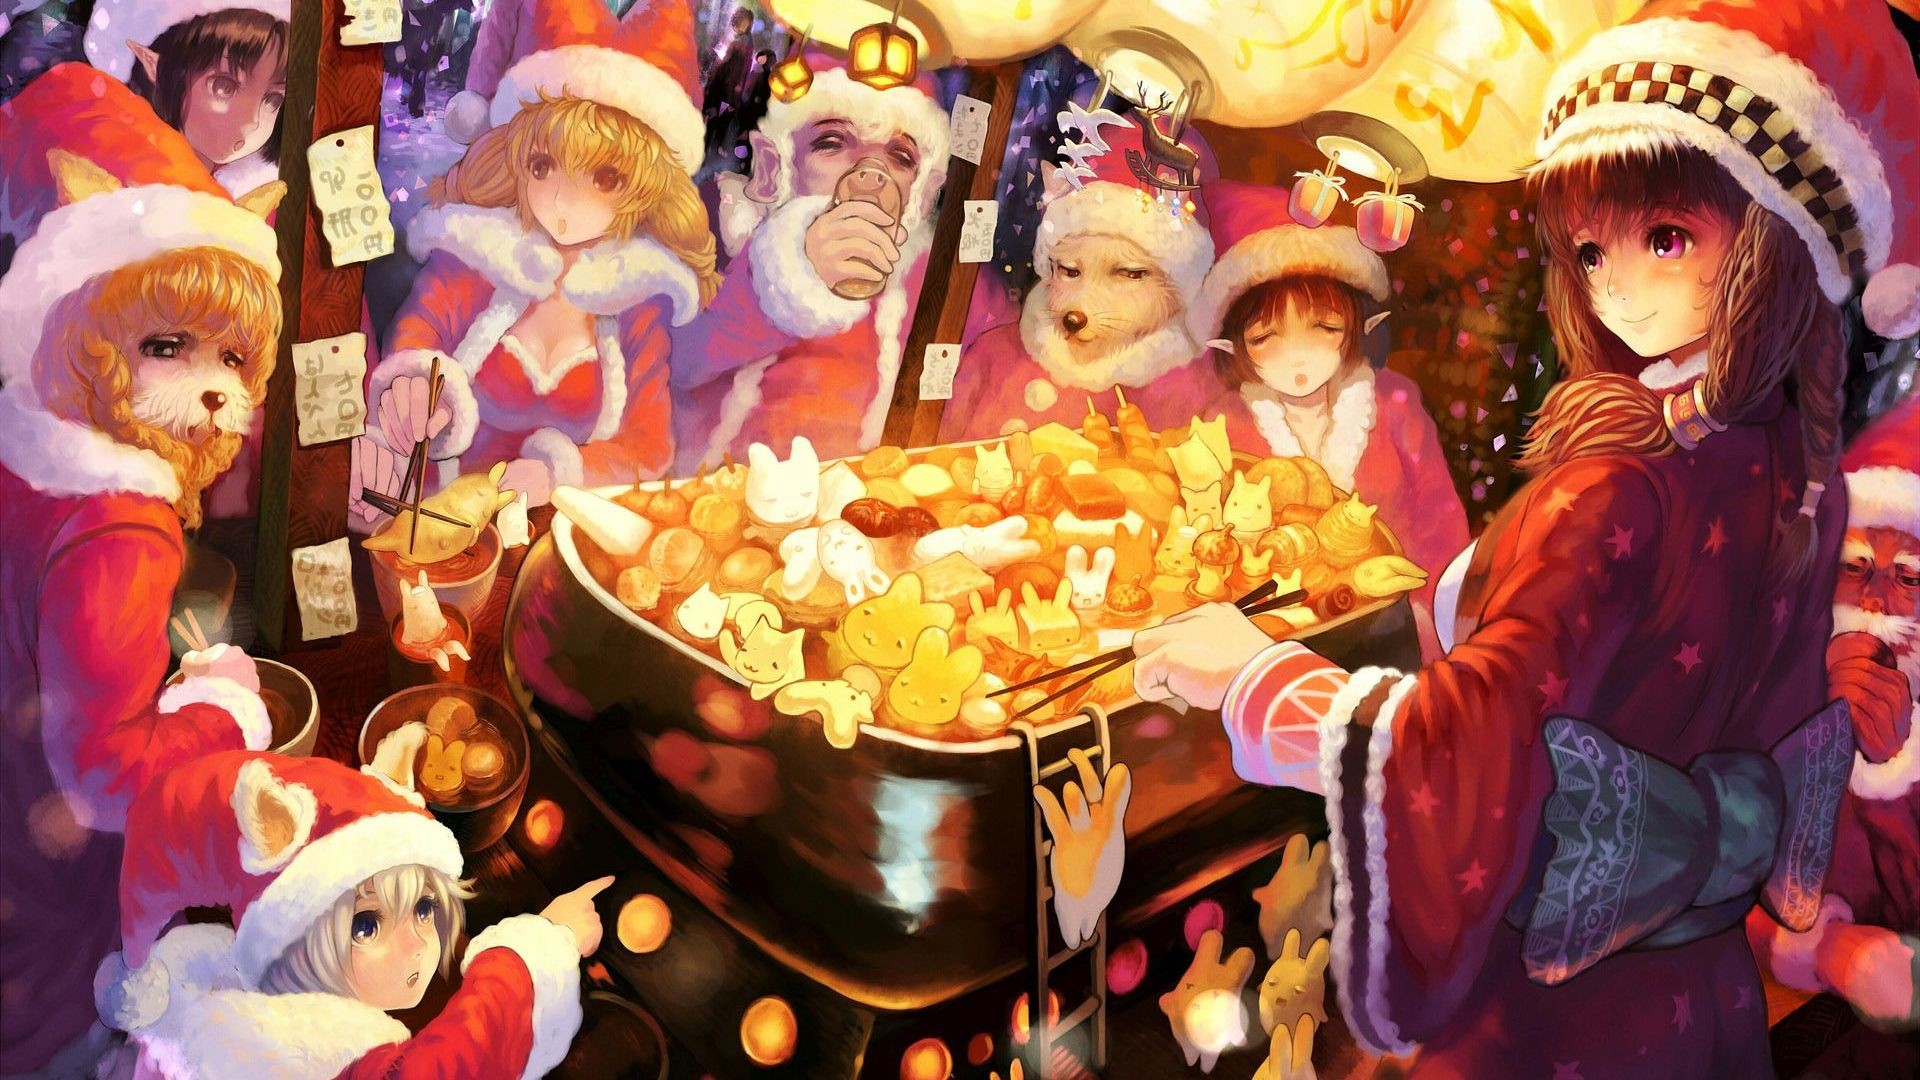 Wallmost  11 Christmas Anime Wallpaper 4k Cute Anime Girl Christmas  Wallpapers Hd Pixels  httpswallmostfinetoshinecom11christmas animewallpaper4kcuteanimegirlchristmaswallpapershdpixelsfeedid7442uniqueid5e887aea513f1  